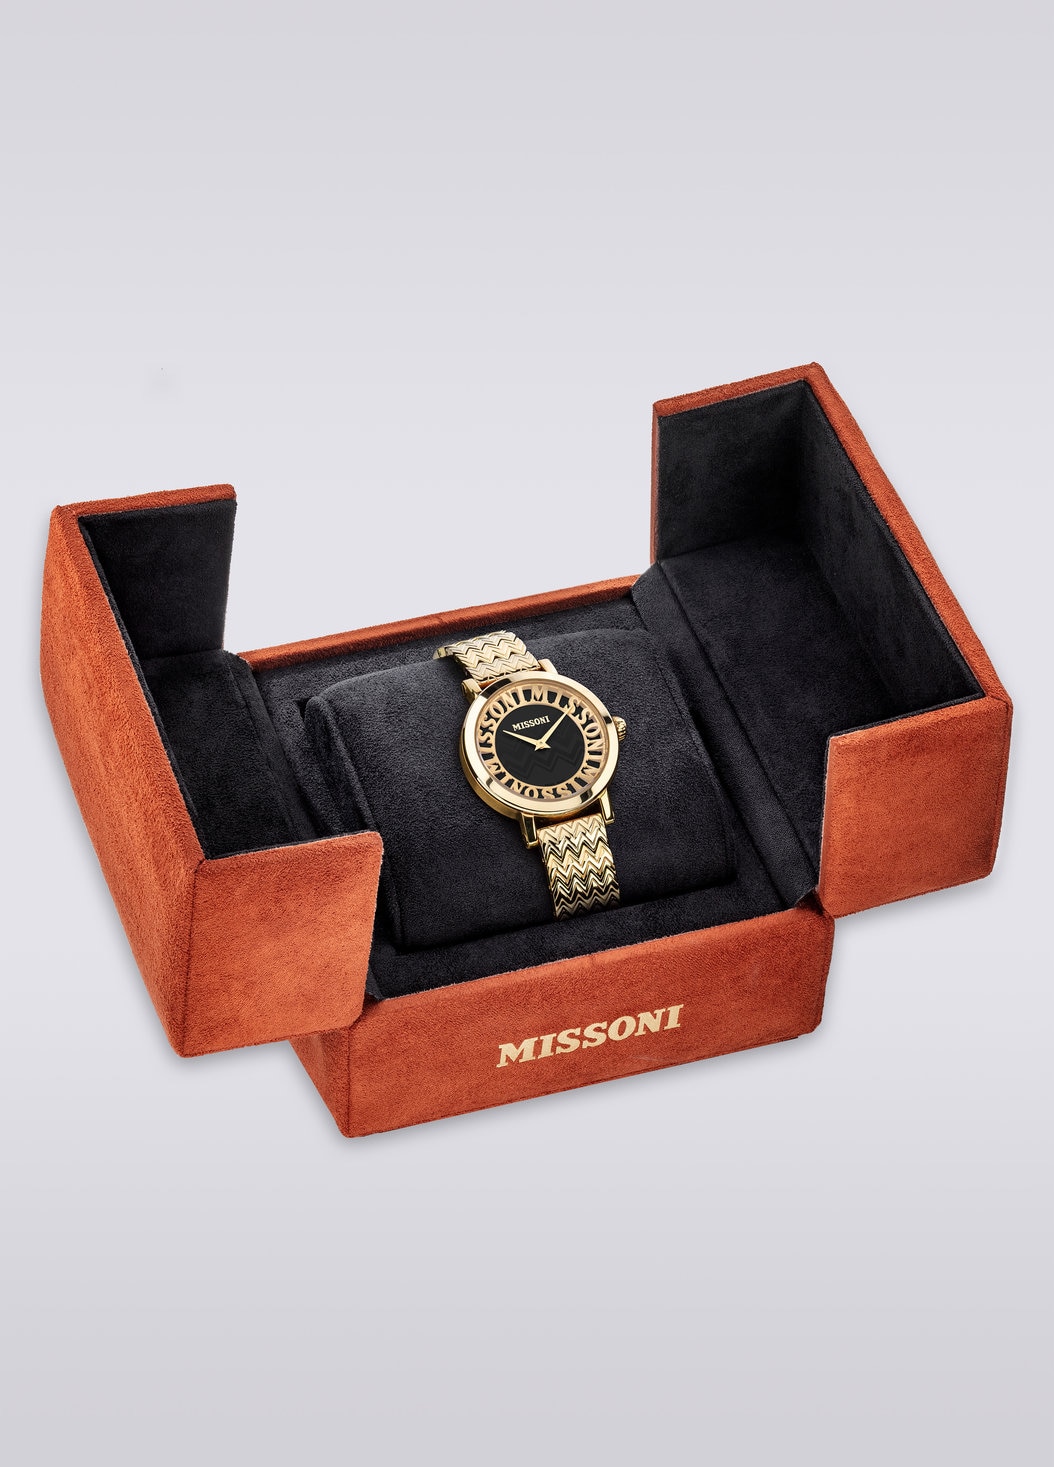 Reloj Missoni Melrose 36mm , Dorado - 8051575781698 - 4